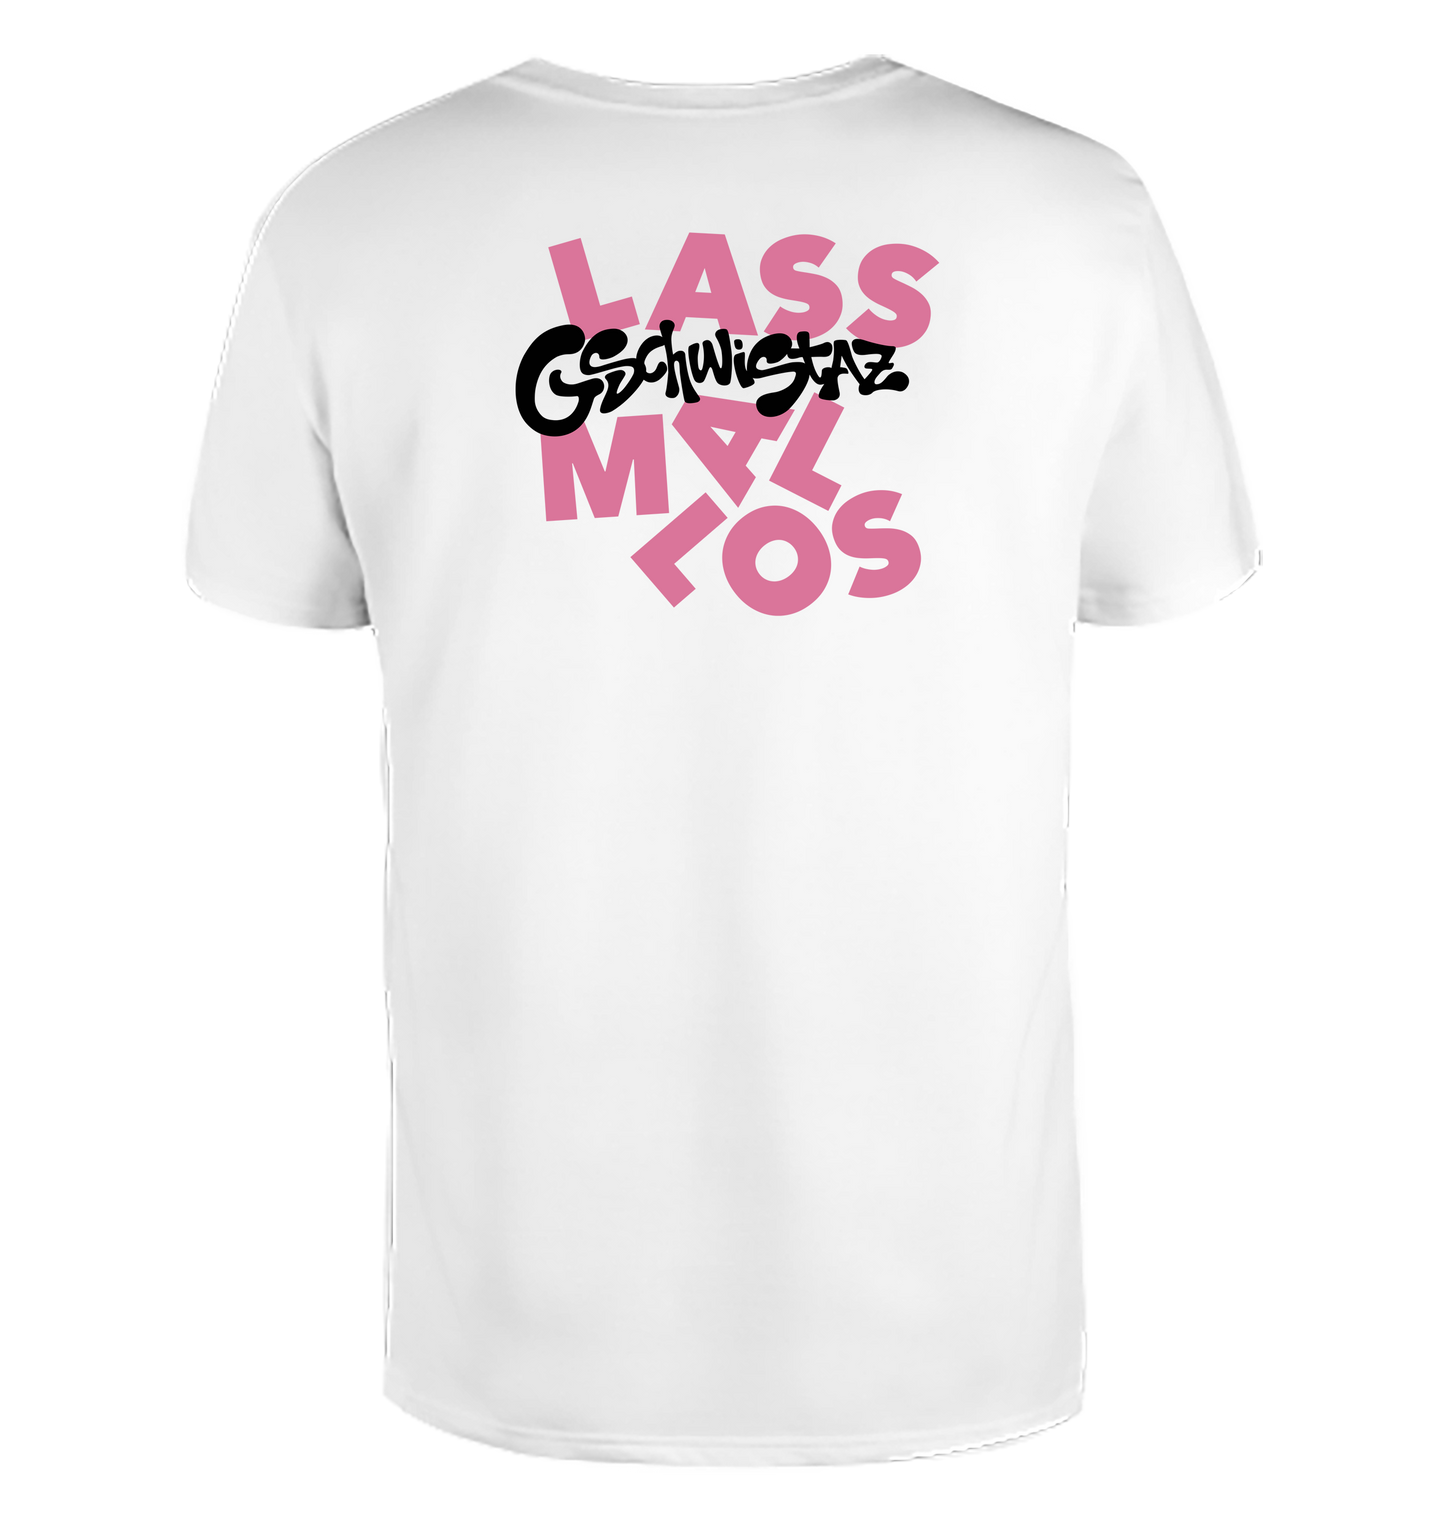 T-Shirt Backprint "LASS MAL LOS" GSCHWISTAZ